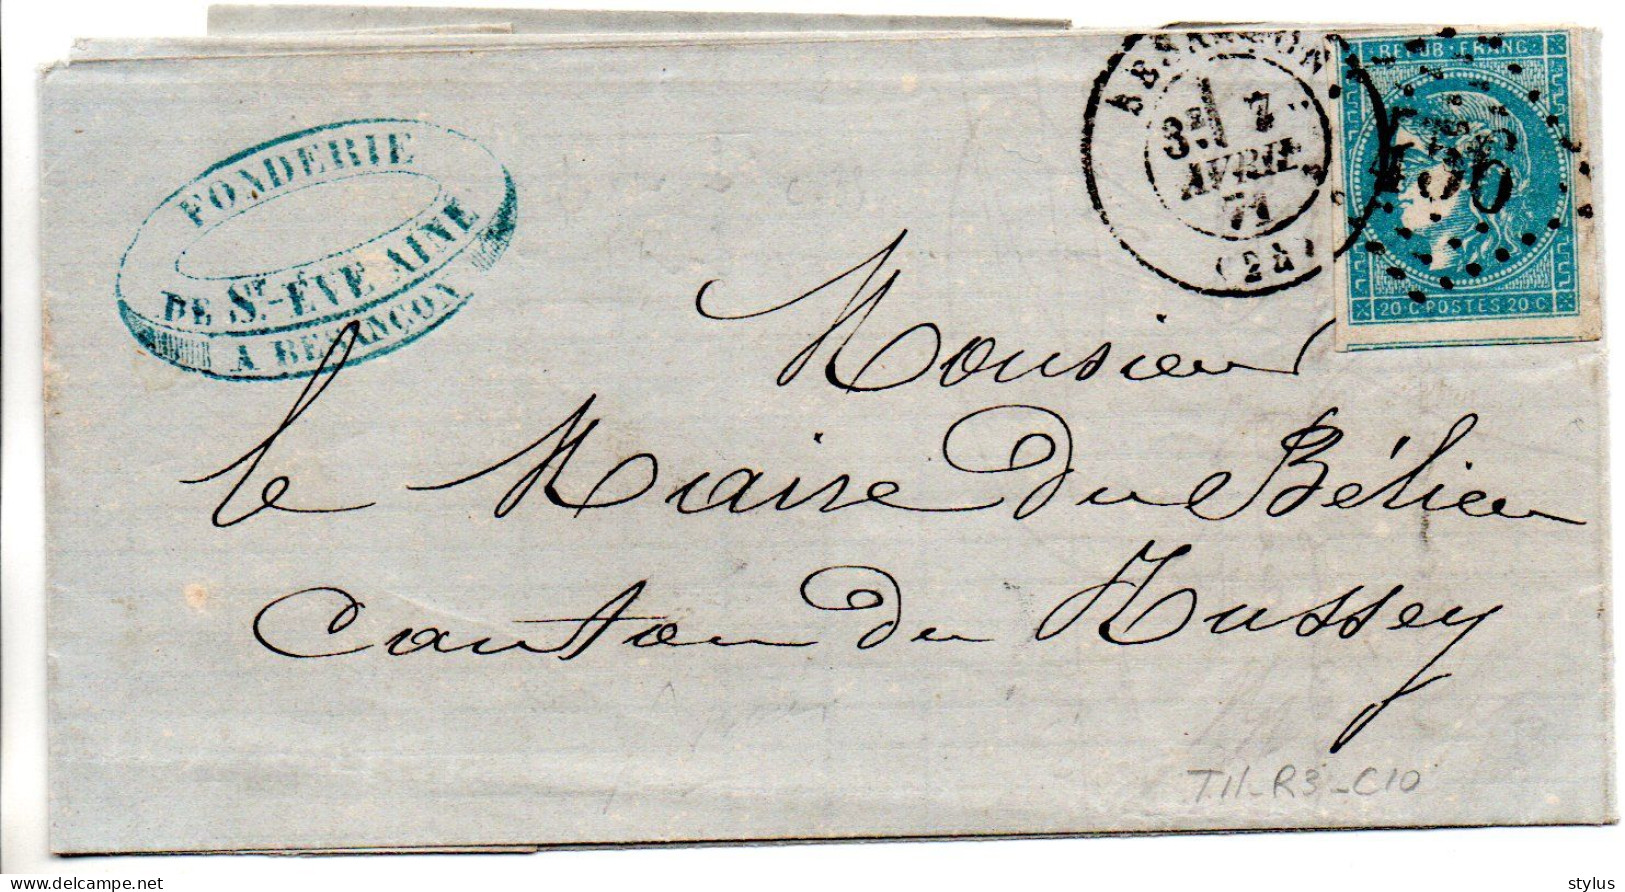 Lettre Besançon Bordeaux TII R3 C10 - 1870 Ausgabe Bordeaux